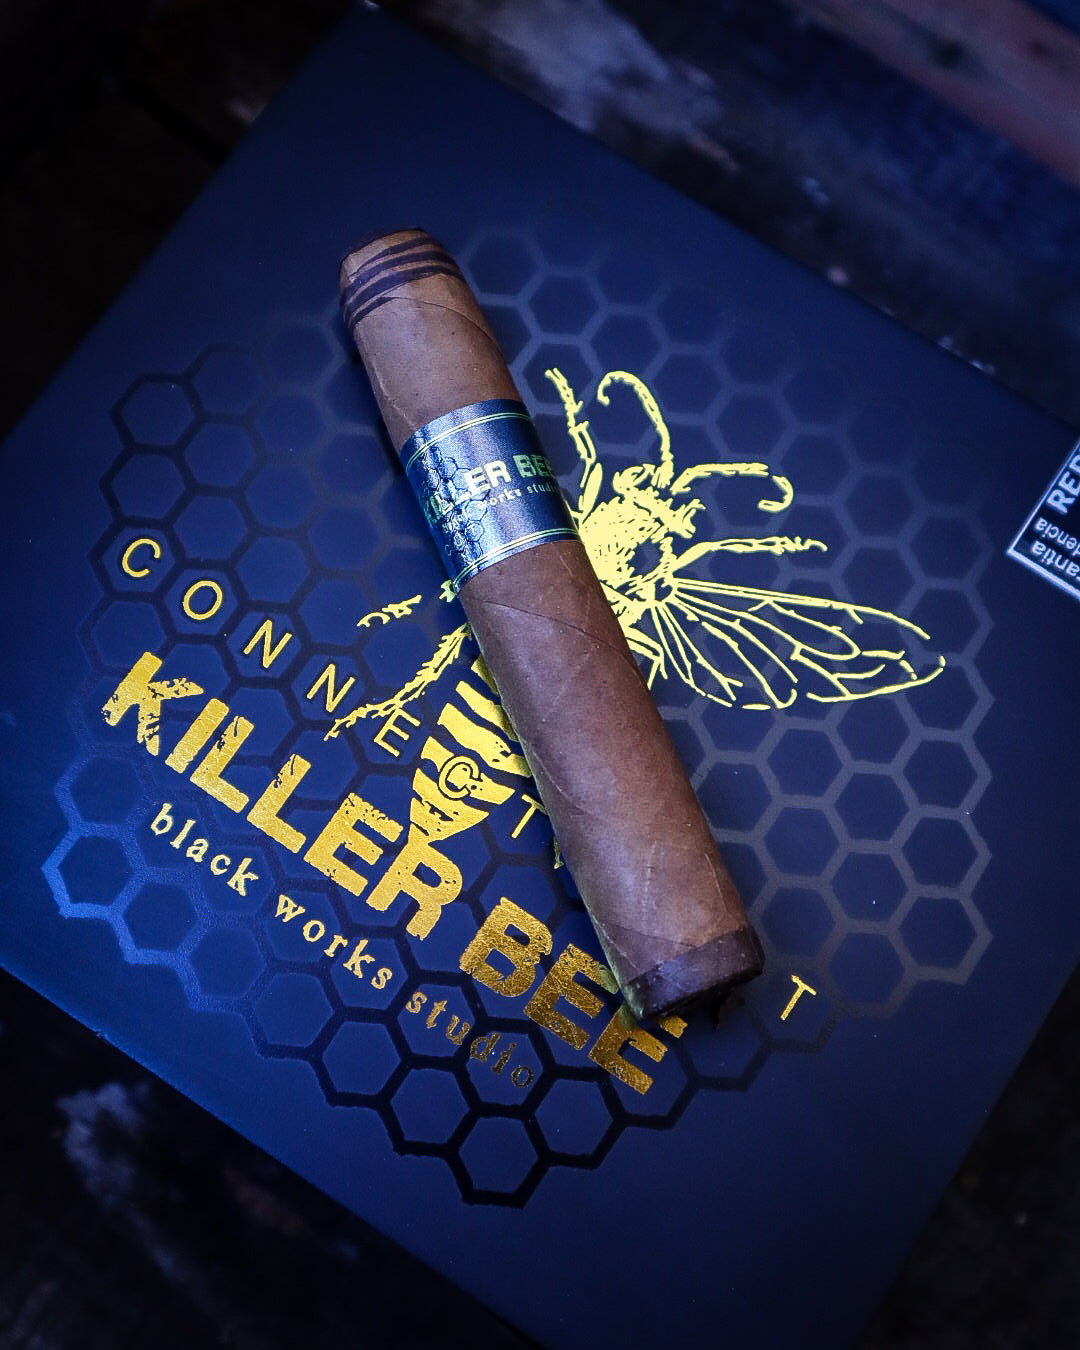 BLK WKS Killer Bee Connecticut